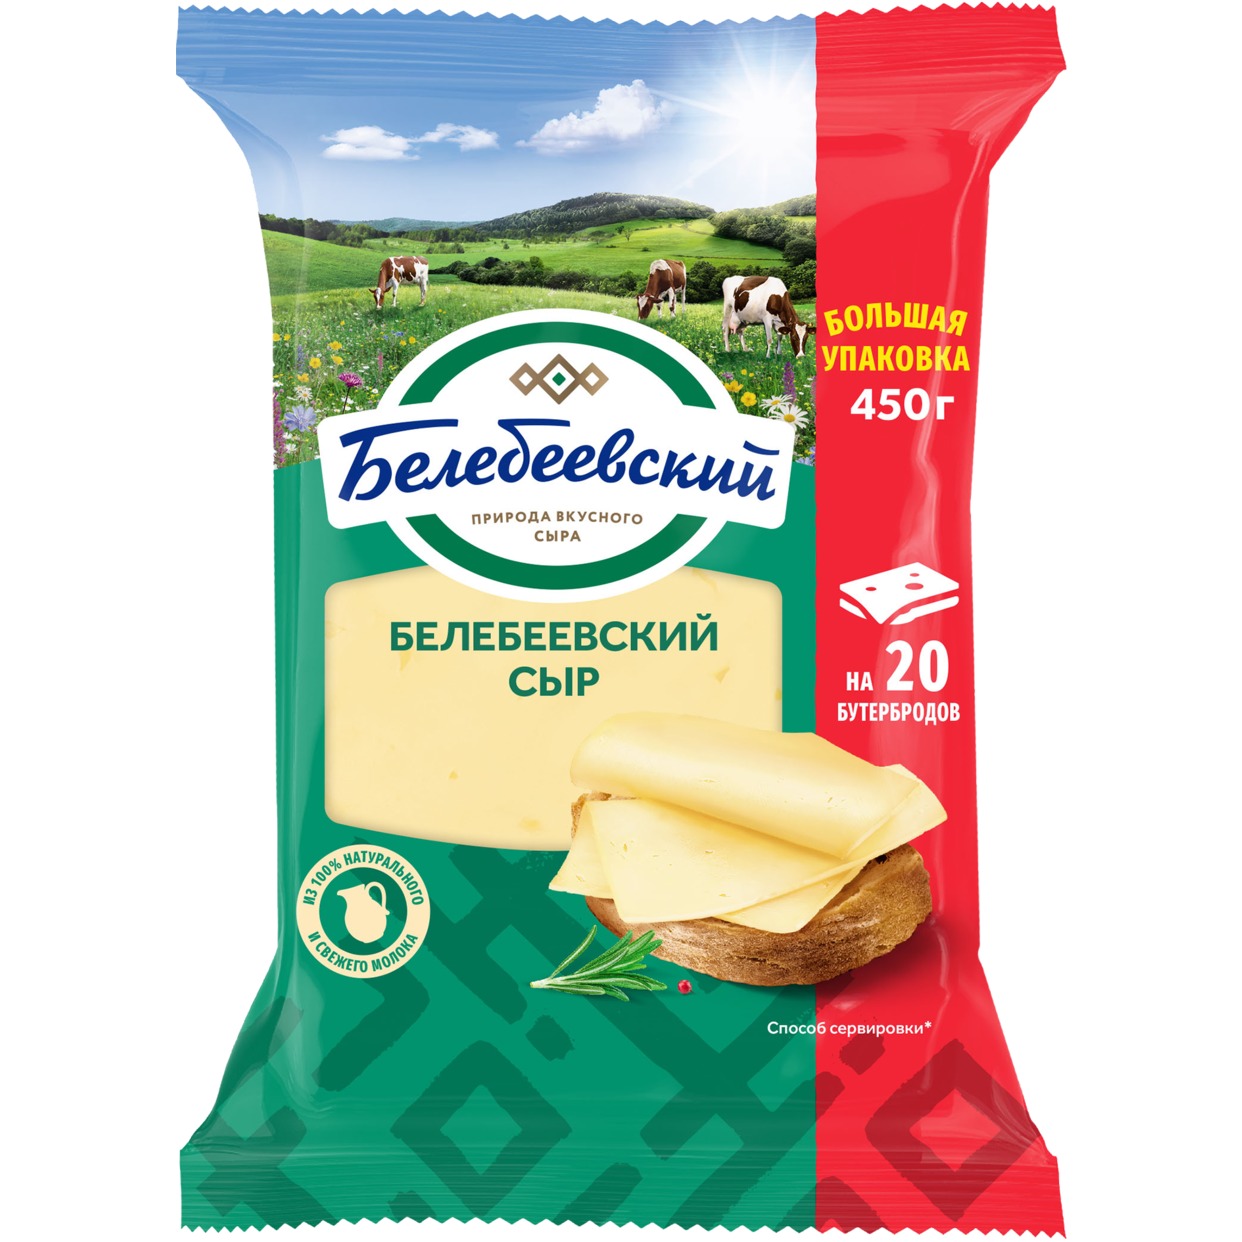 БЗМЖ Сыр полутвёрдый "Белебеевский" с массовой долей жира в сухом веществе 45%, 450 гр. по акции в Пятерочке